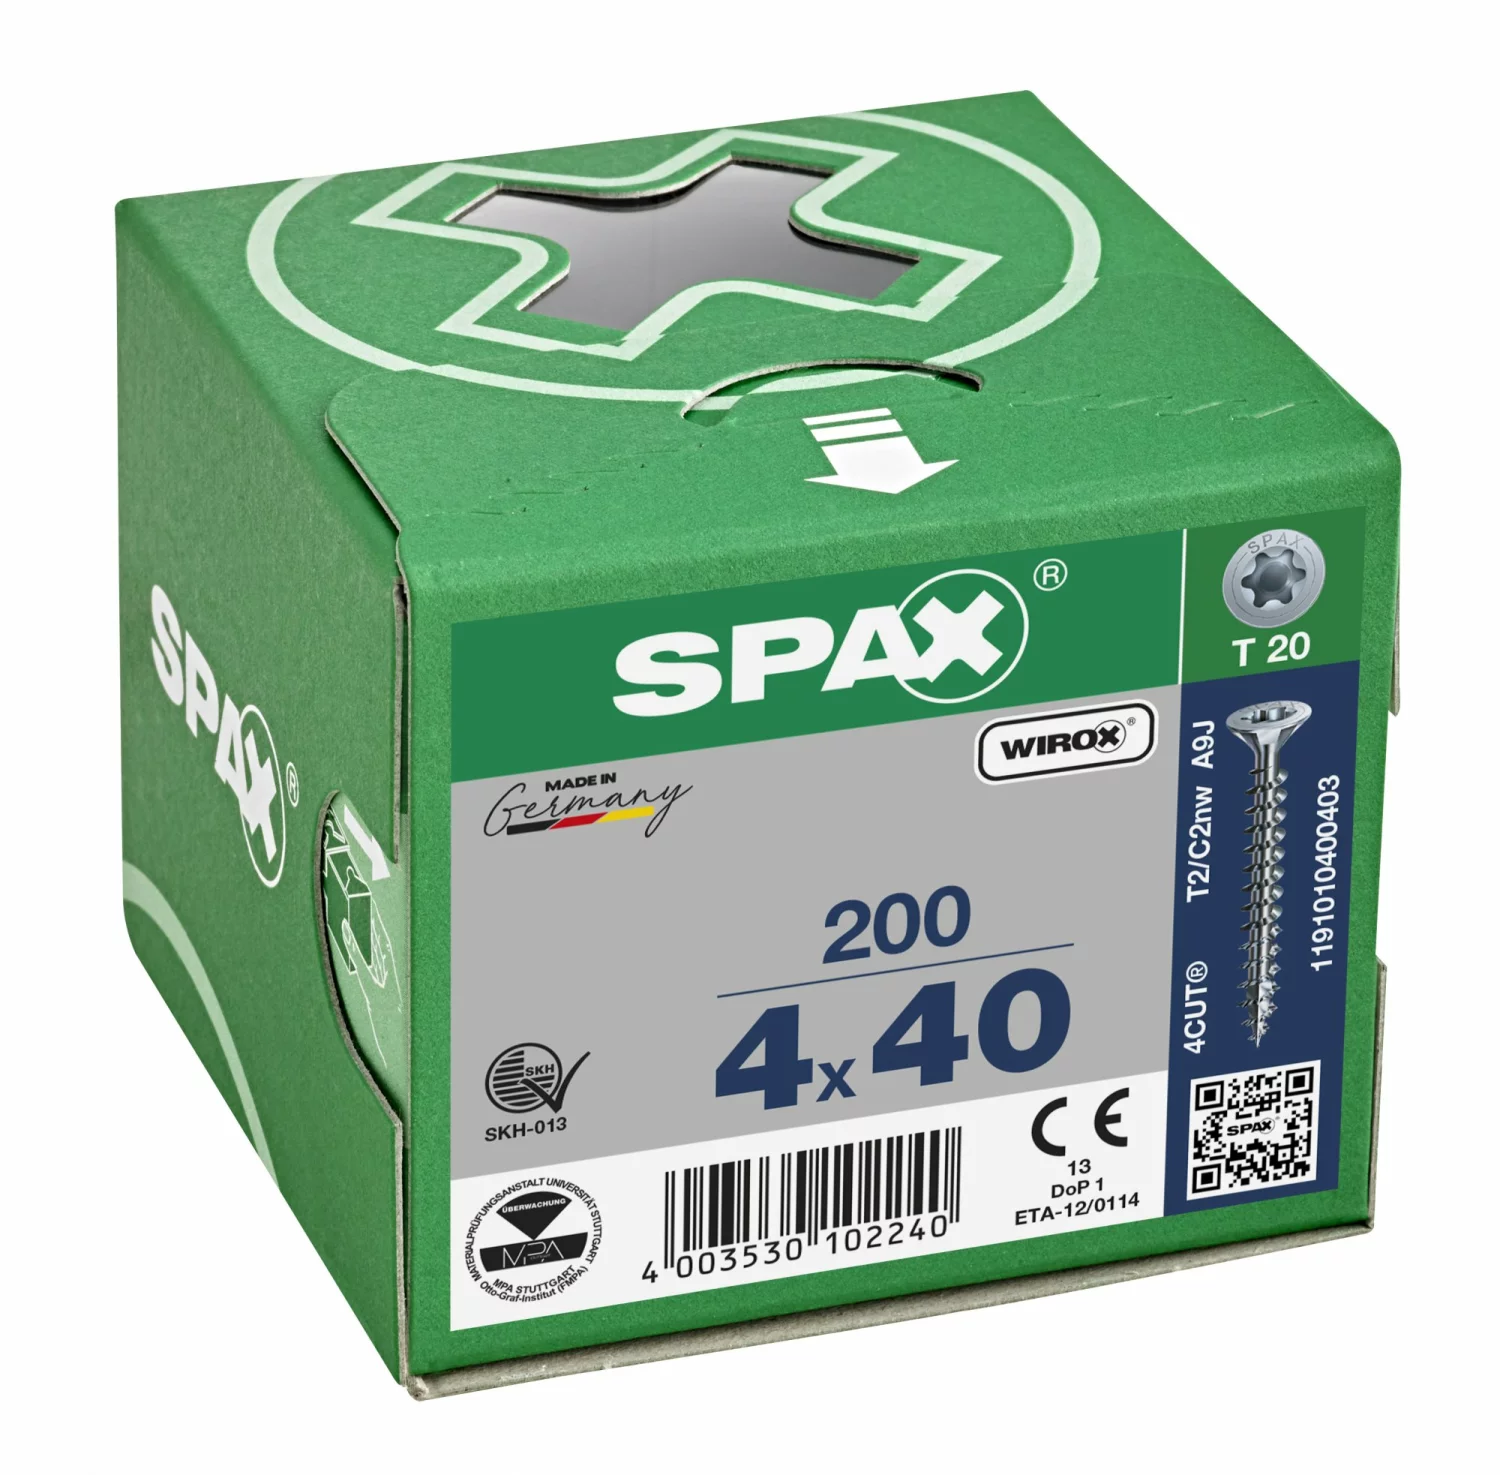 SPAX 1191010400403 Universele schroef, Verzonken kop, 4 x 40, Voldraad, T-STAR plus TX20 - WIROX - 200 stuks-image